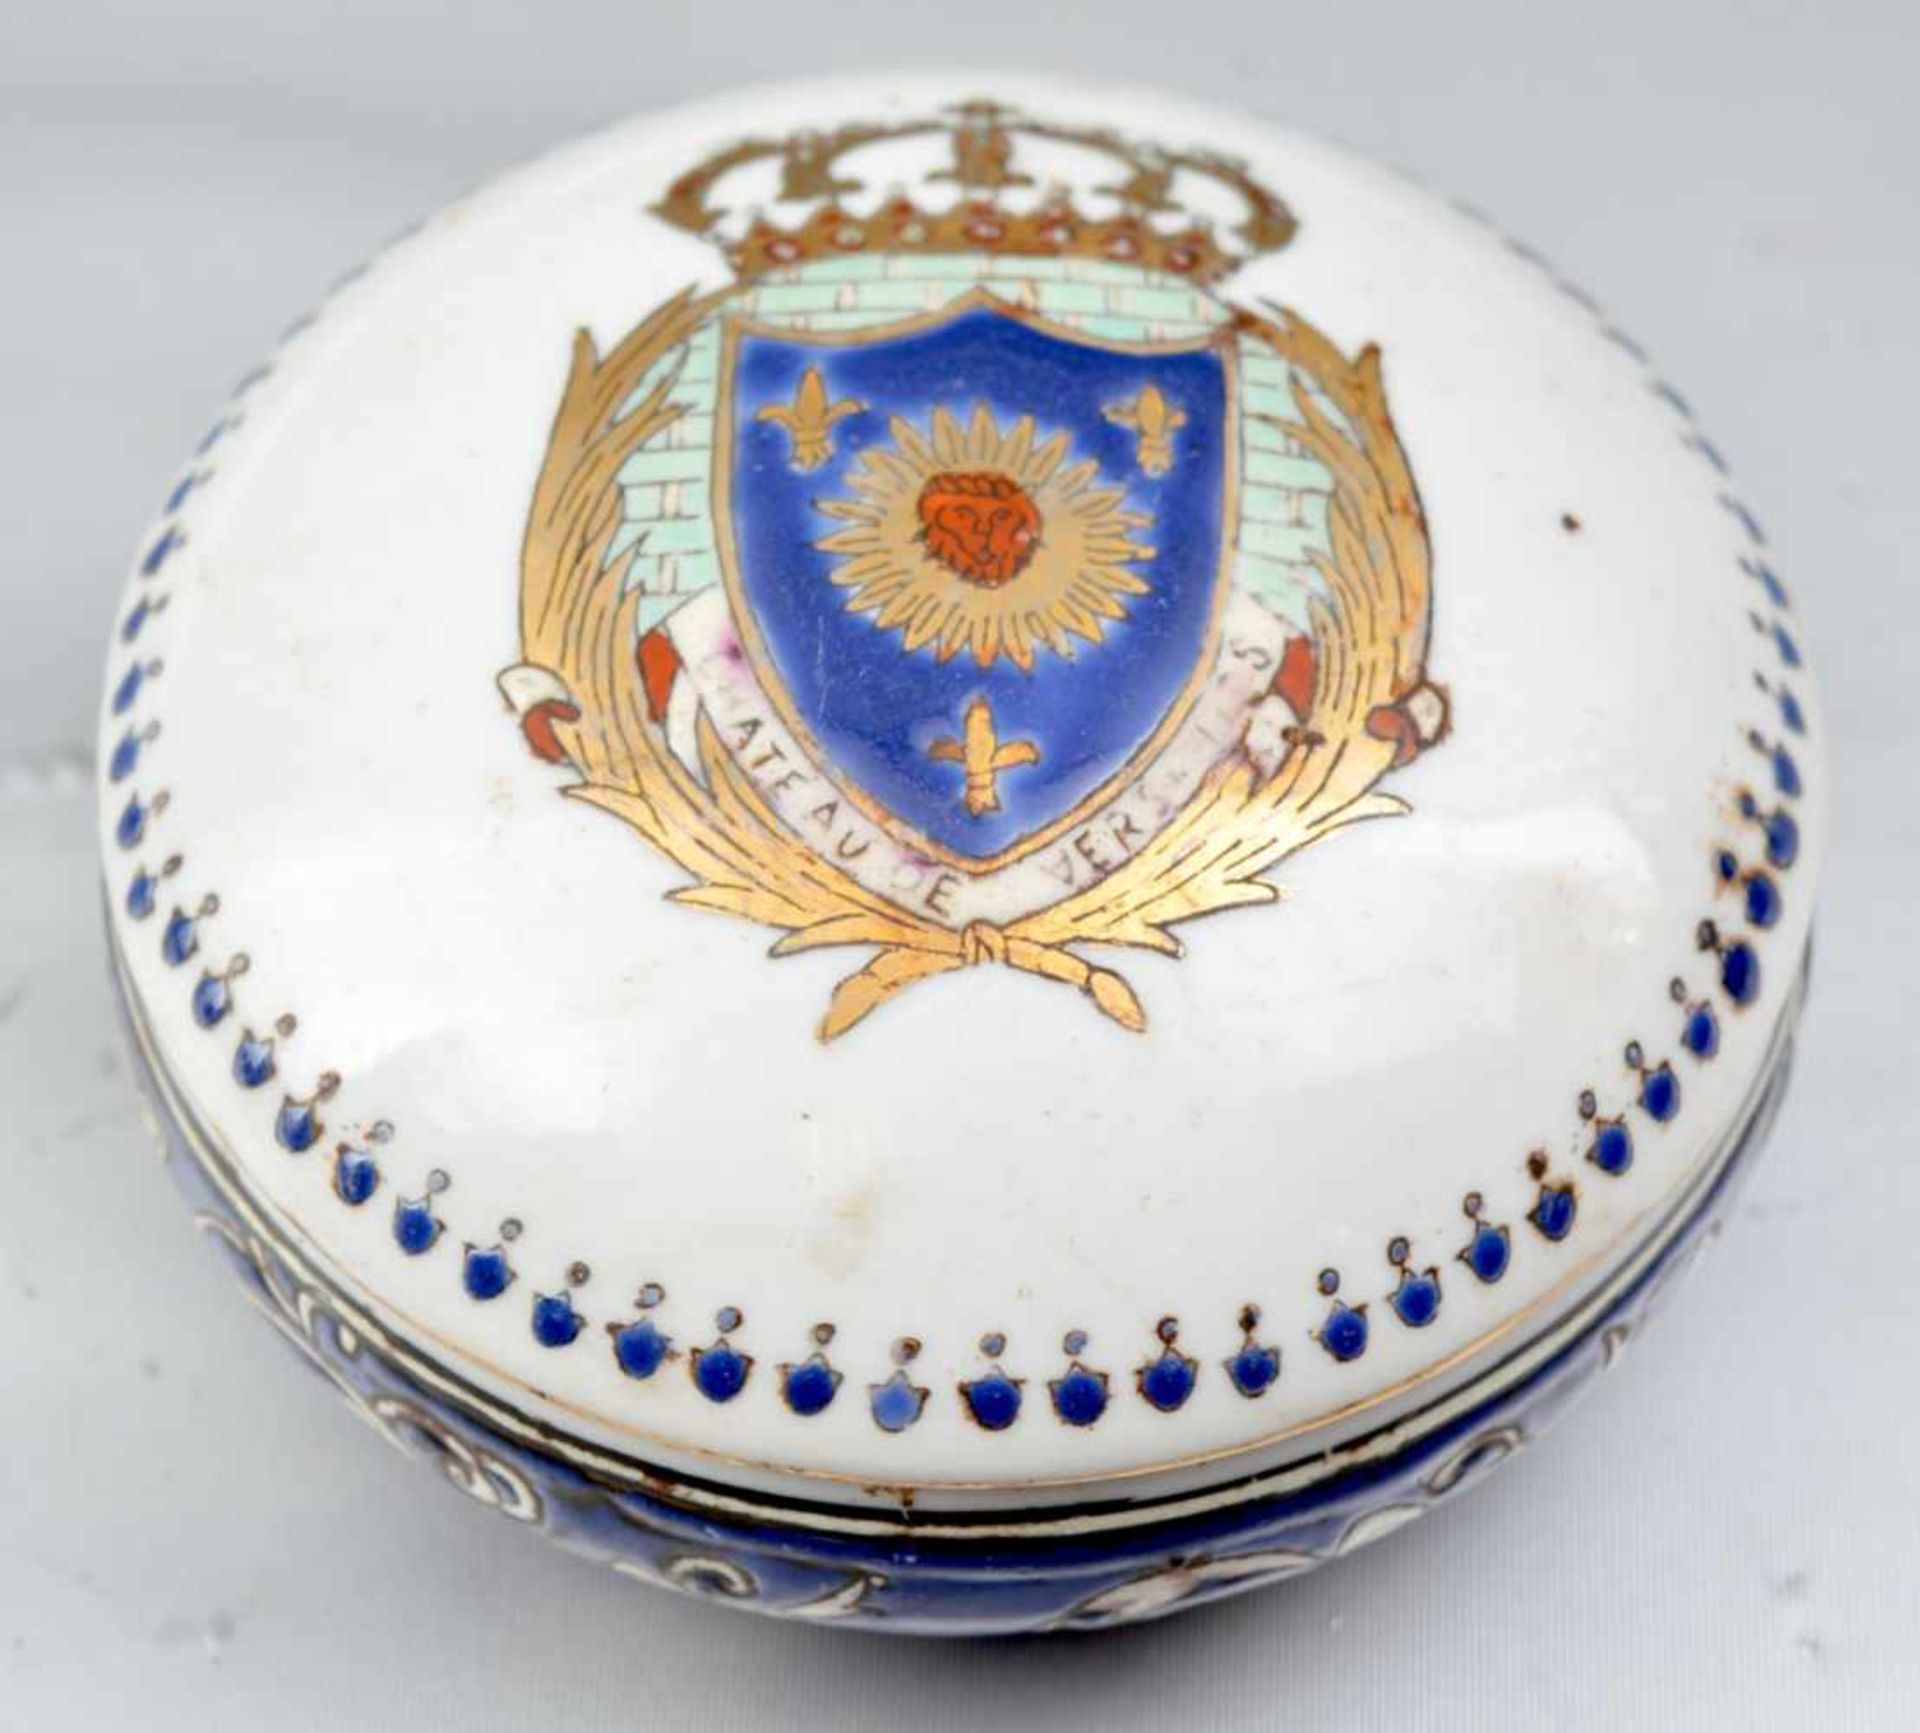 Dose Porzellan, rund, mit Wappen und Ornamenten verziert, H 5 cm, Dm 10 cm